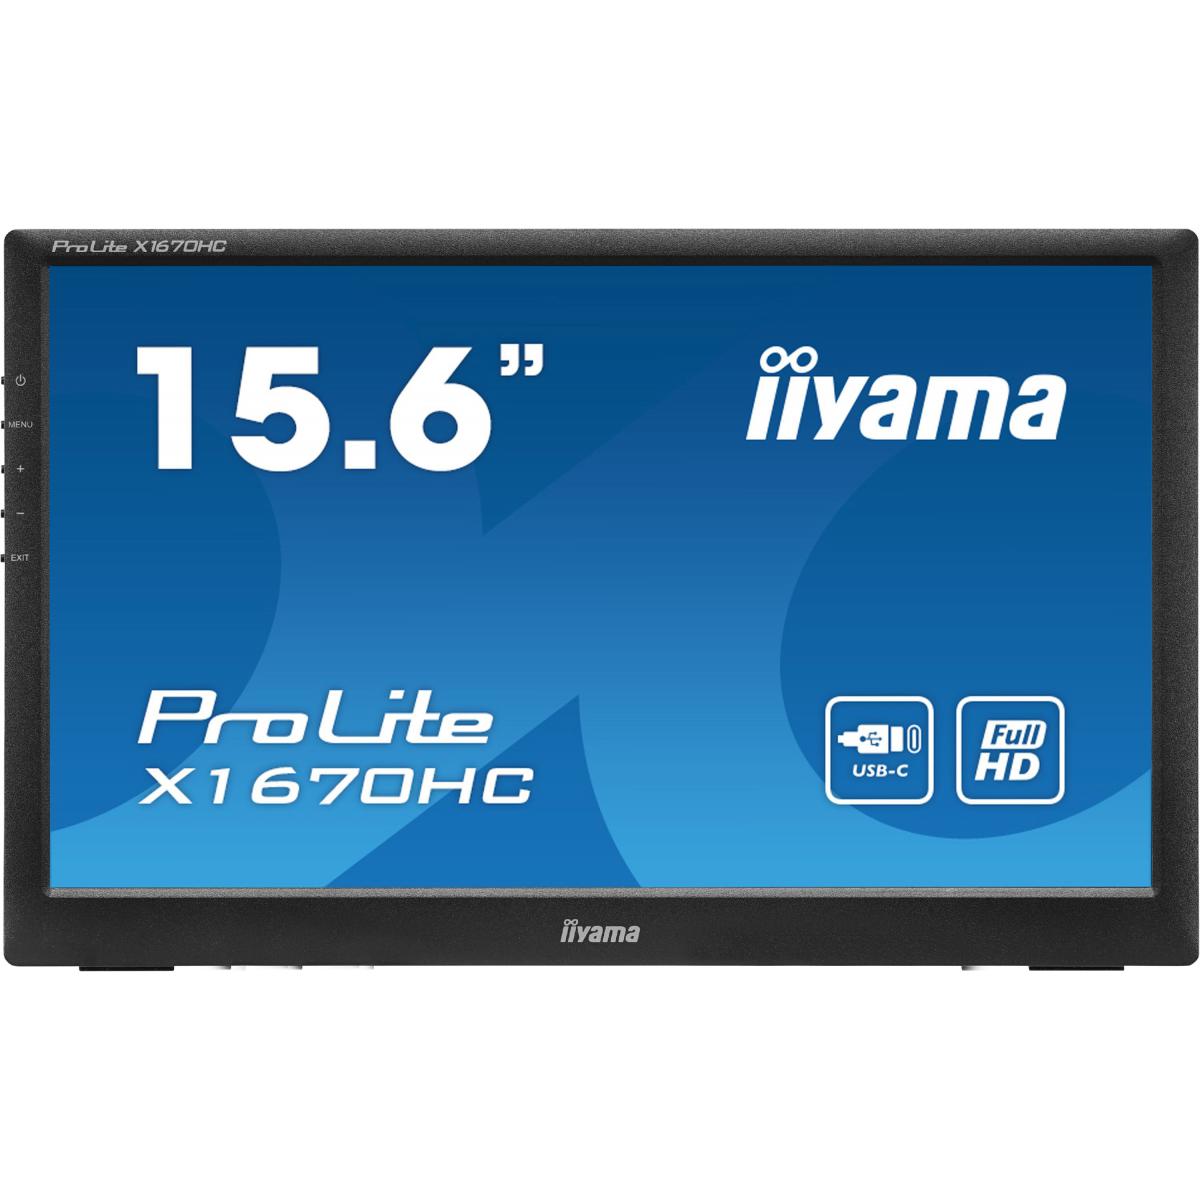 Iiyama - 15.6" LED - X1670HC-B1 - Moniteur PC